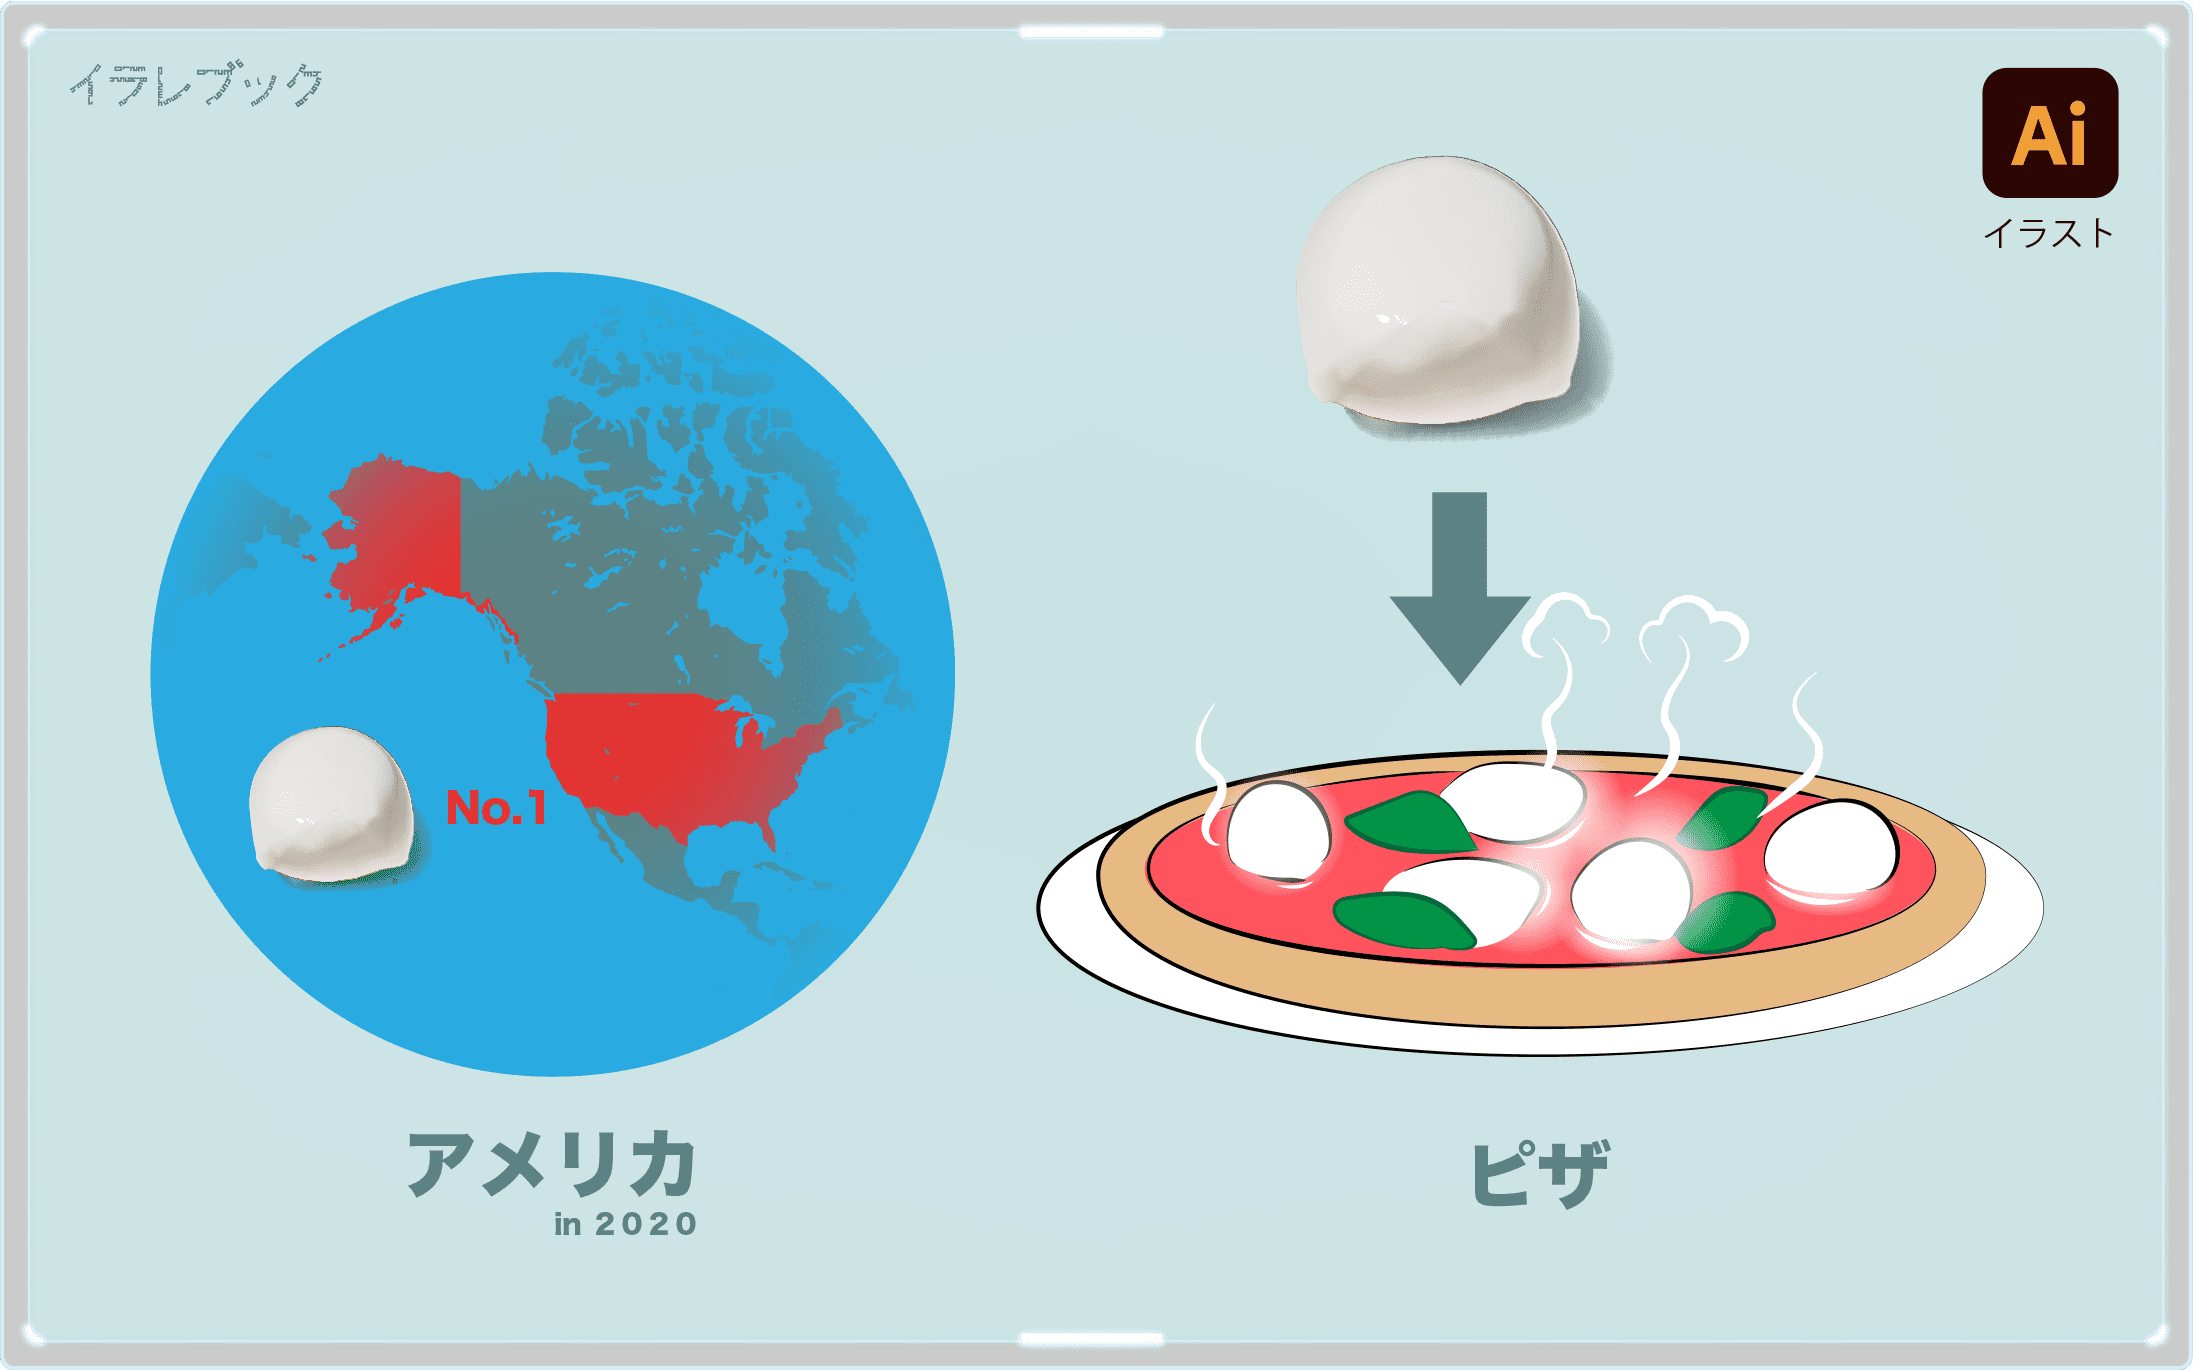 モッツァレラチーズは、2020年ではアメリカが一番多く作っている